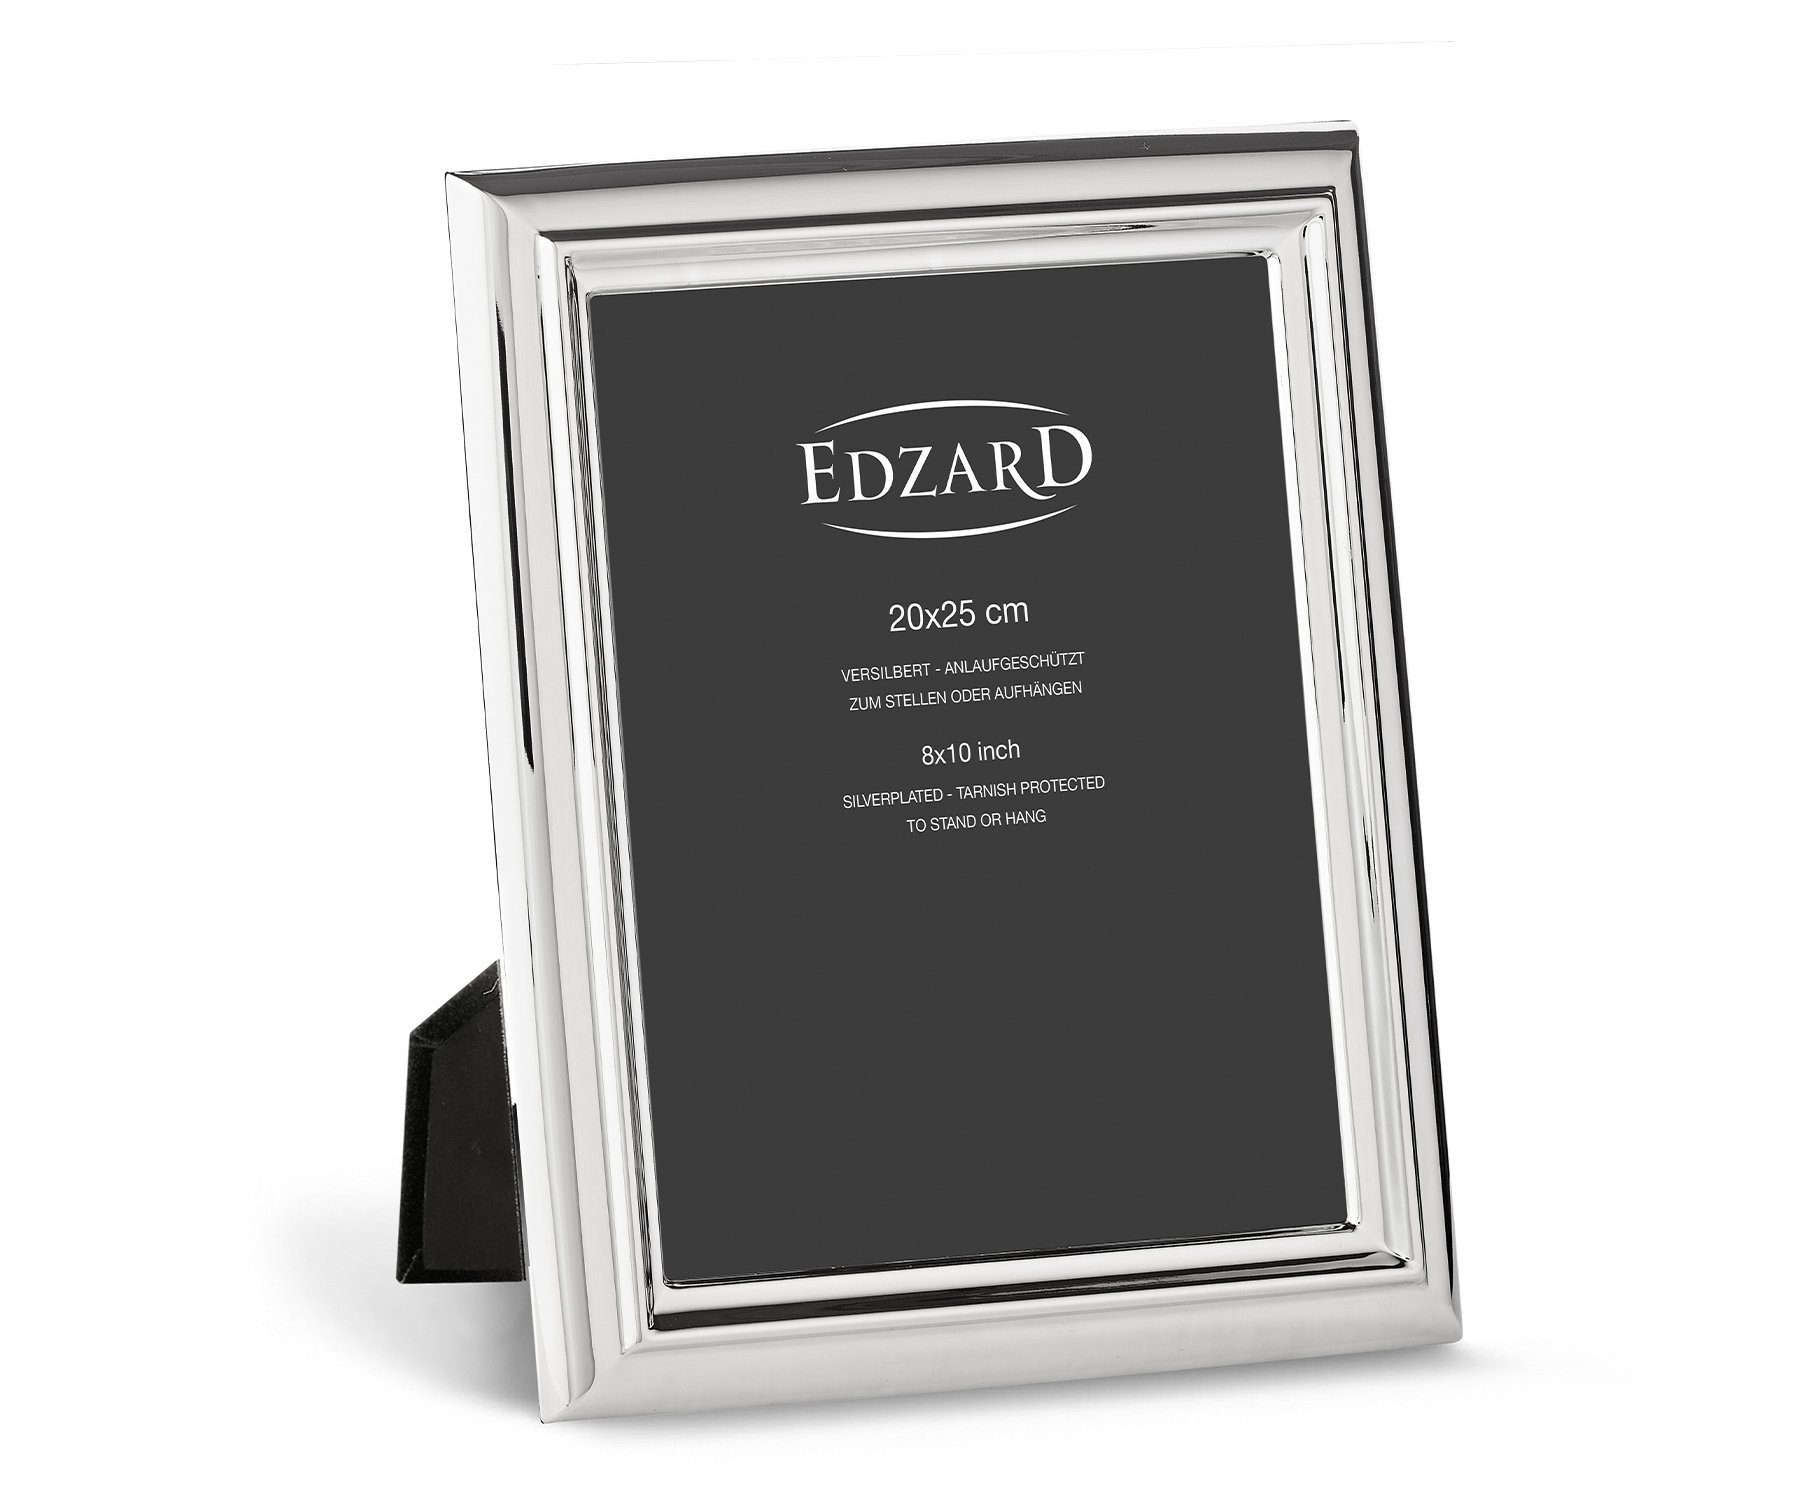 20x25 EDZARD versilbert Bilder anlaufgeschützt, – für Fotorahmen und Bilderrahmen cm Florenz,